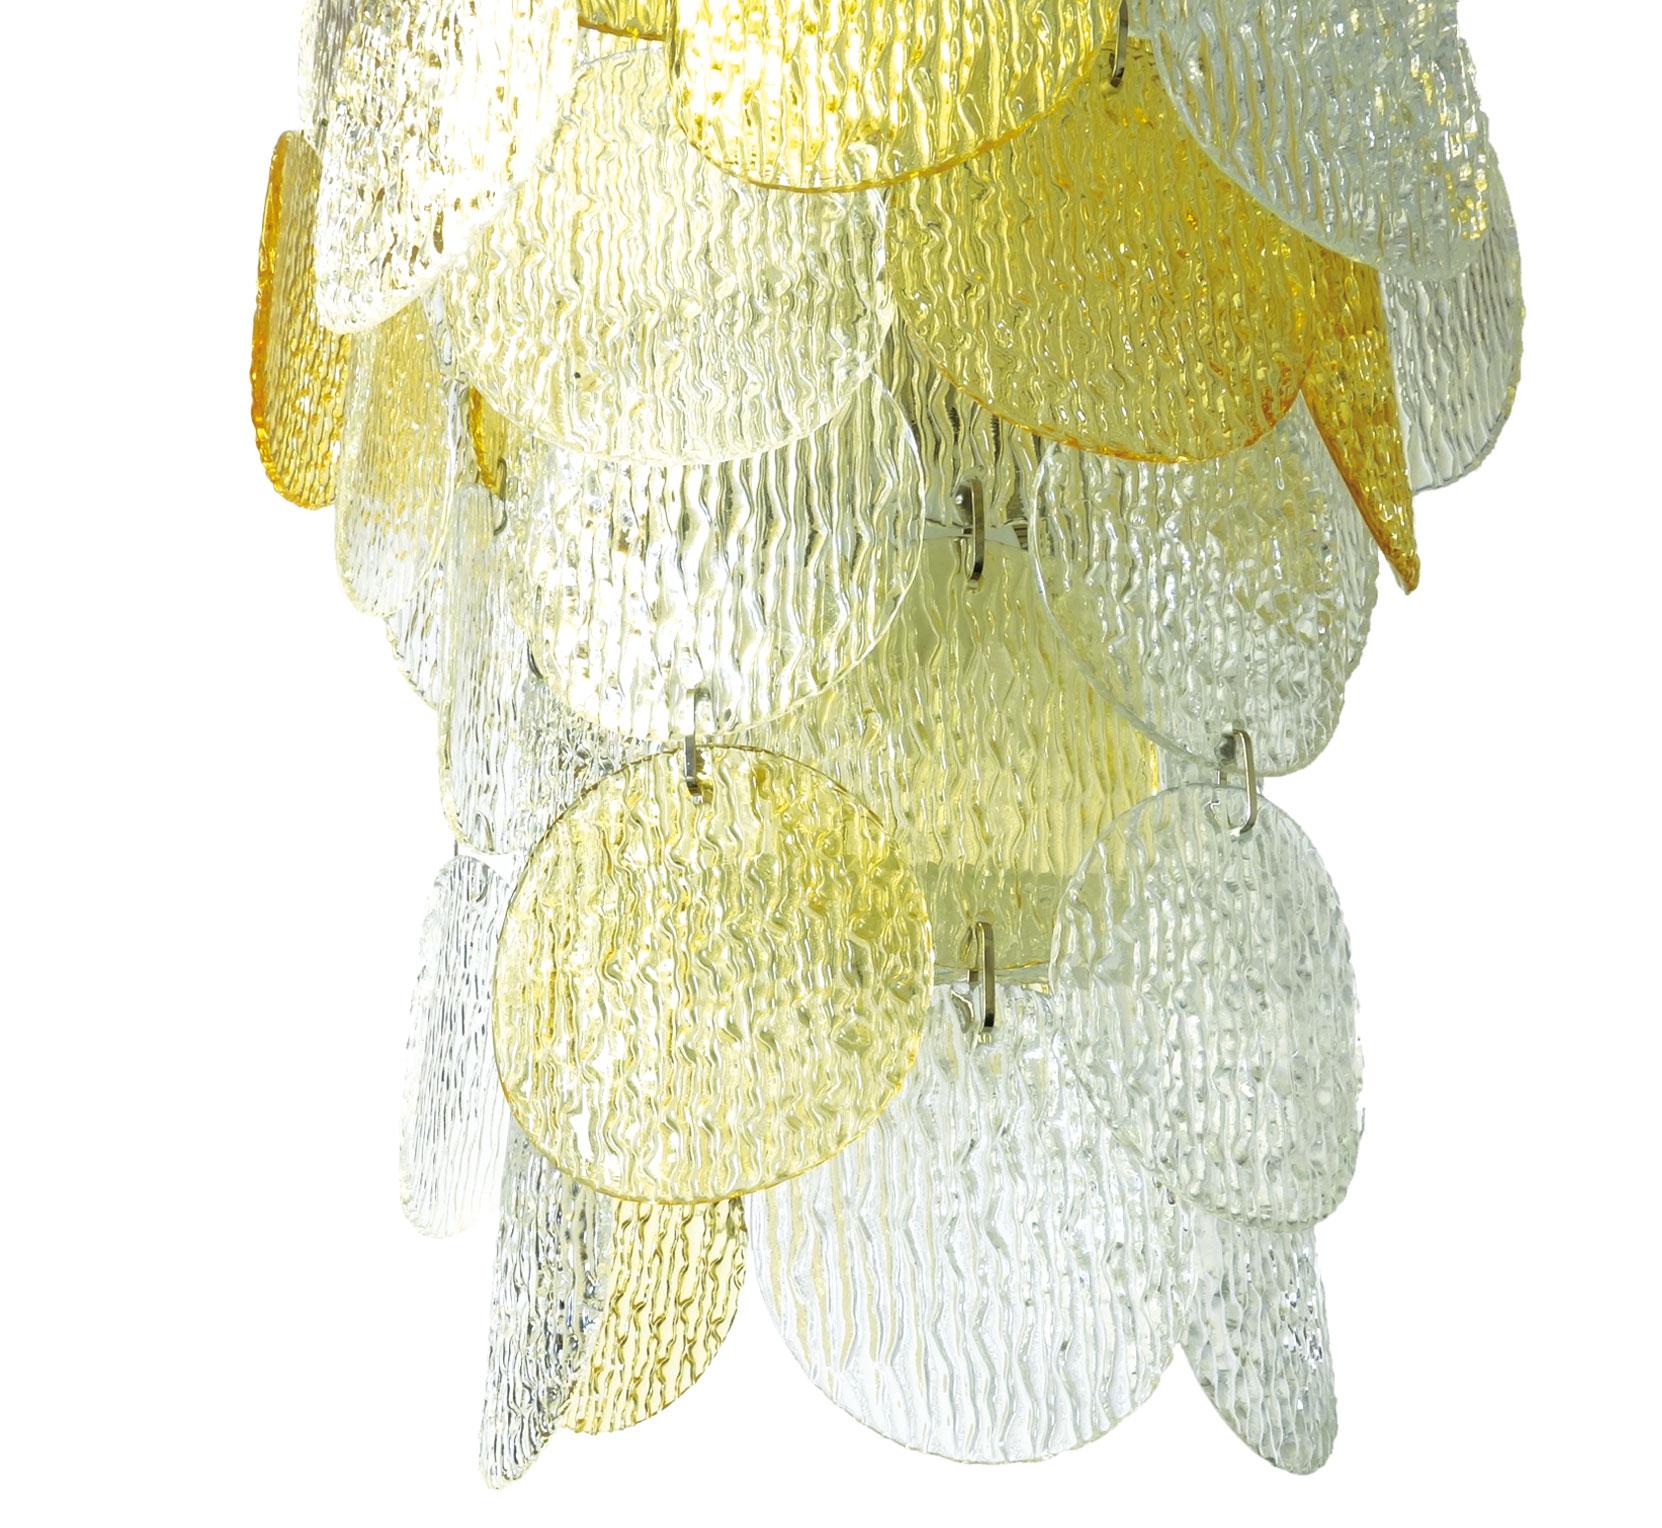 Kronleuchter Vistosi Torcello Muranoglas Pendelleuchte Italien 1970er gelb weiß. Dieses Objekt besteht aus 26 strukturierten Glasscheiben, die auf einem Aluminiumrahmen montiert sind, einschließlich 6 Glühbirnenfassungen. Dieser Kronleuchter wurde